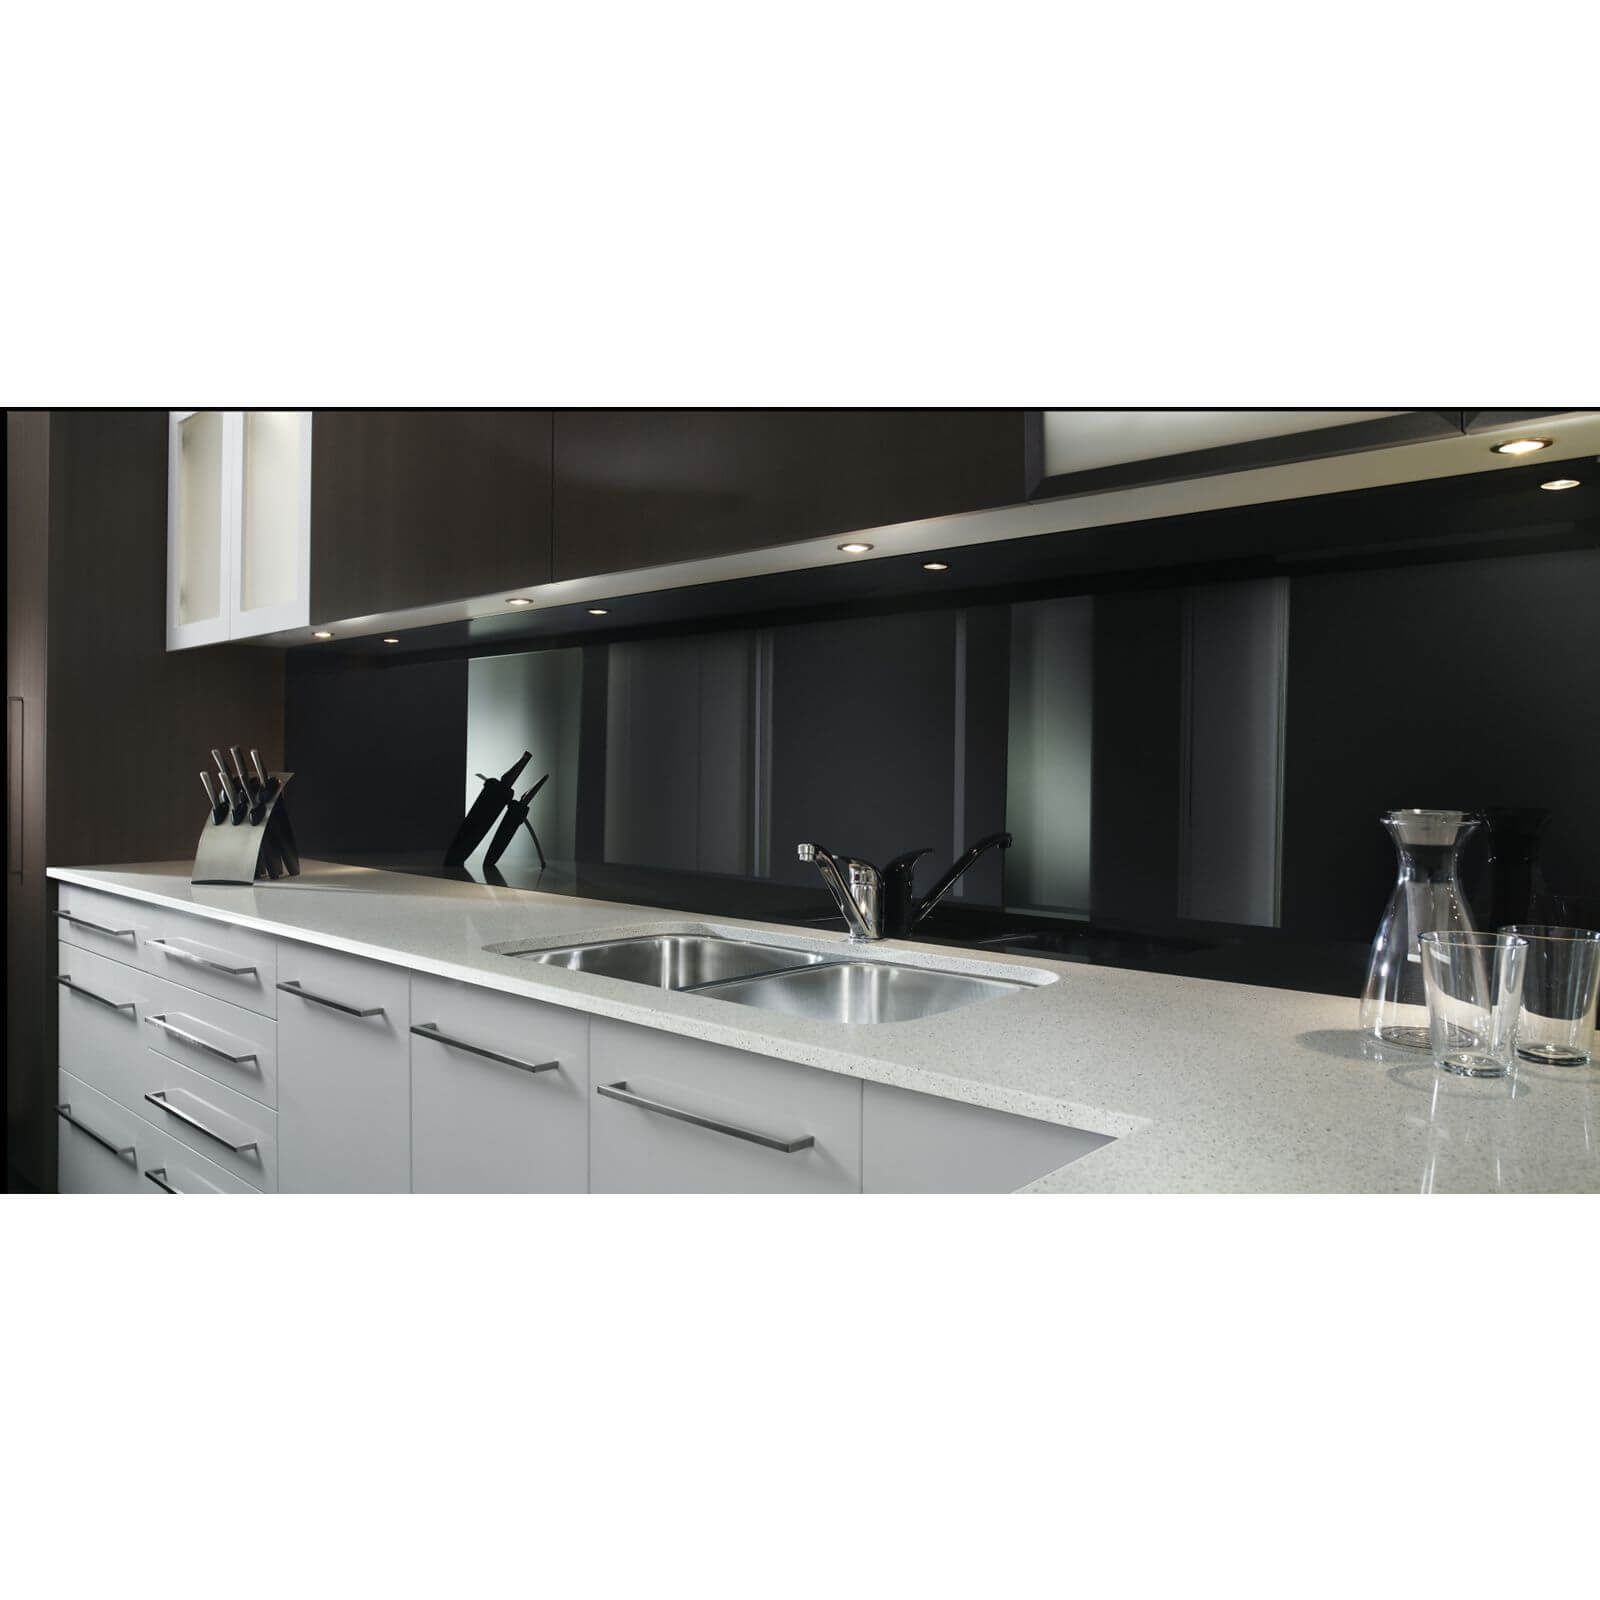 Zenolite Acrylic Kitchen Splashback Panel - 2070 x 500mm - Black